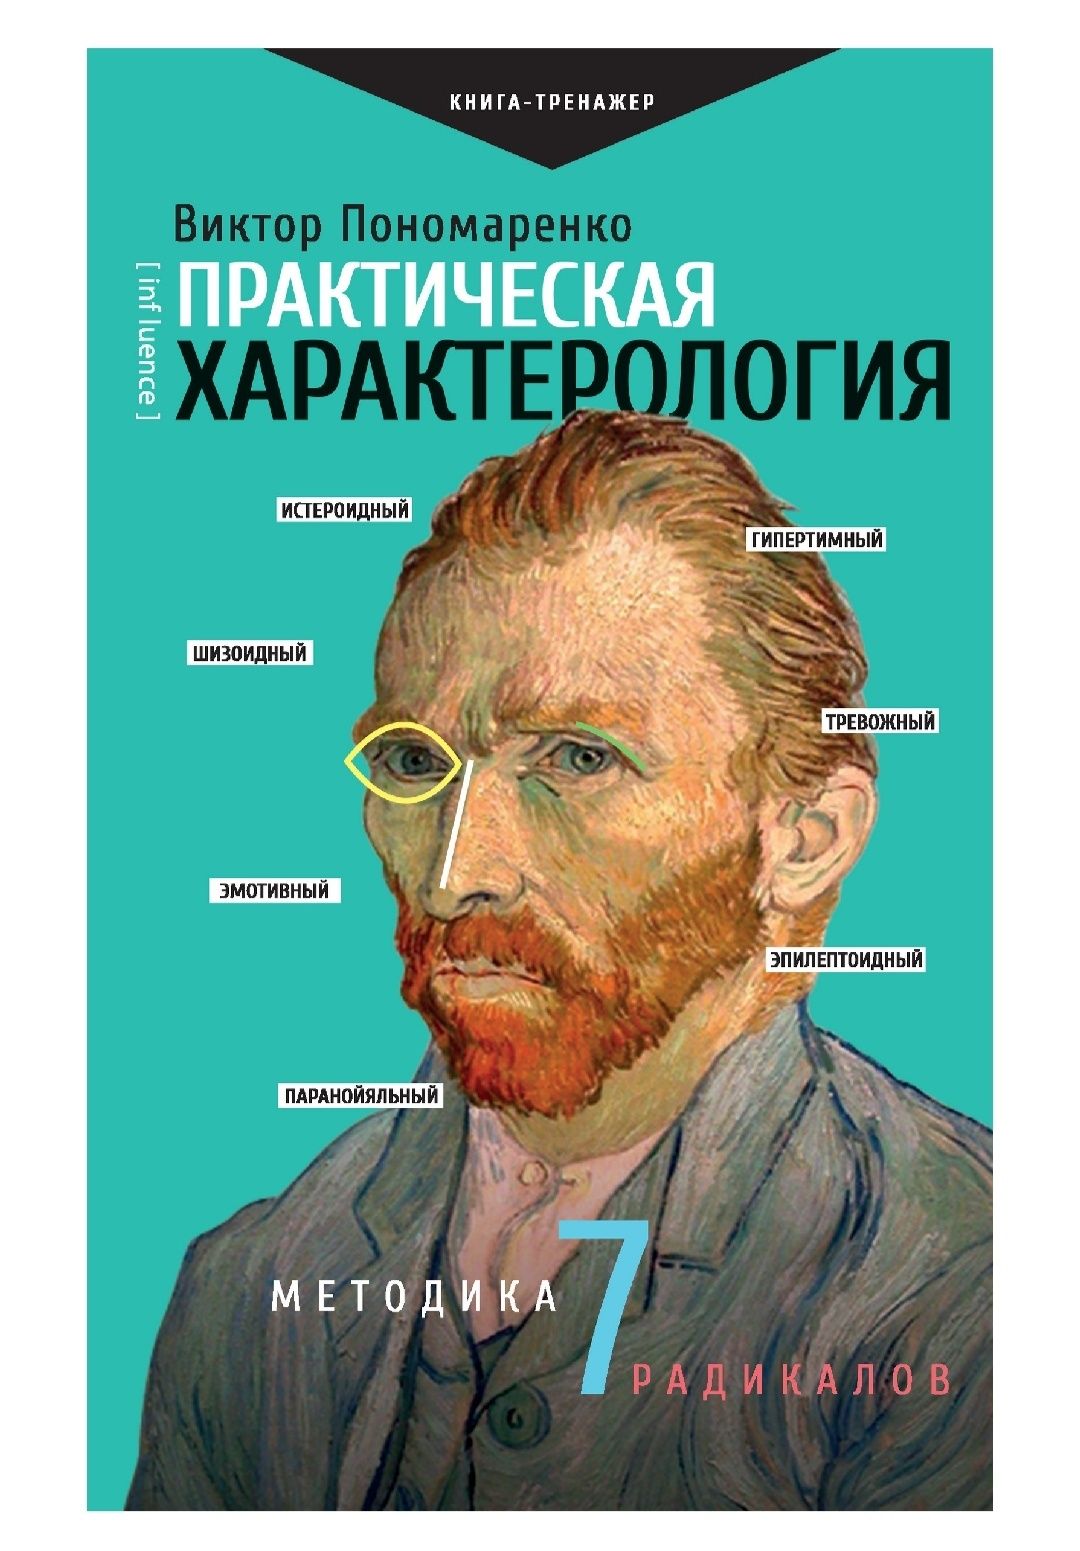 Практическая характерология Виктор Пономаренко
Книга в электронном вид